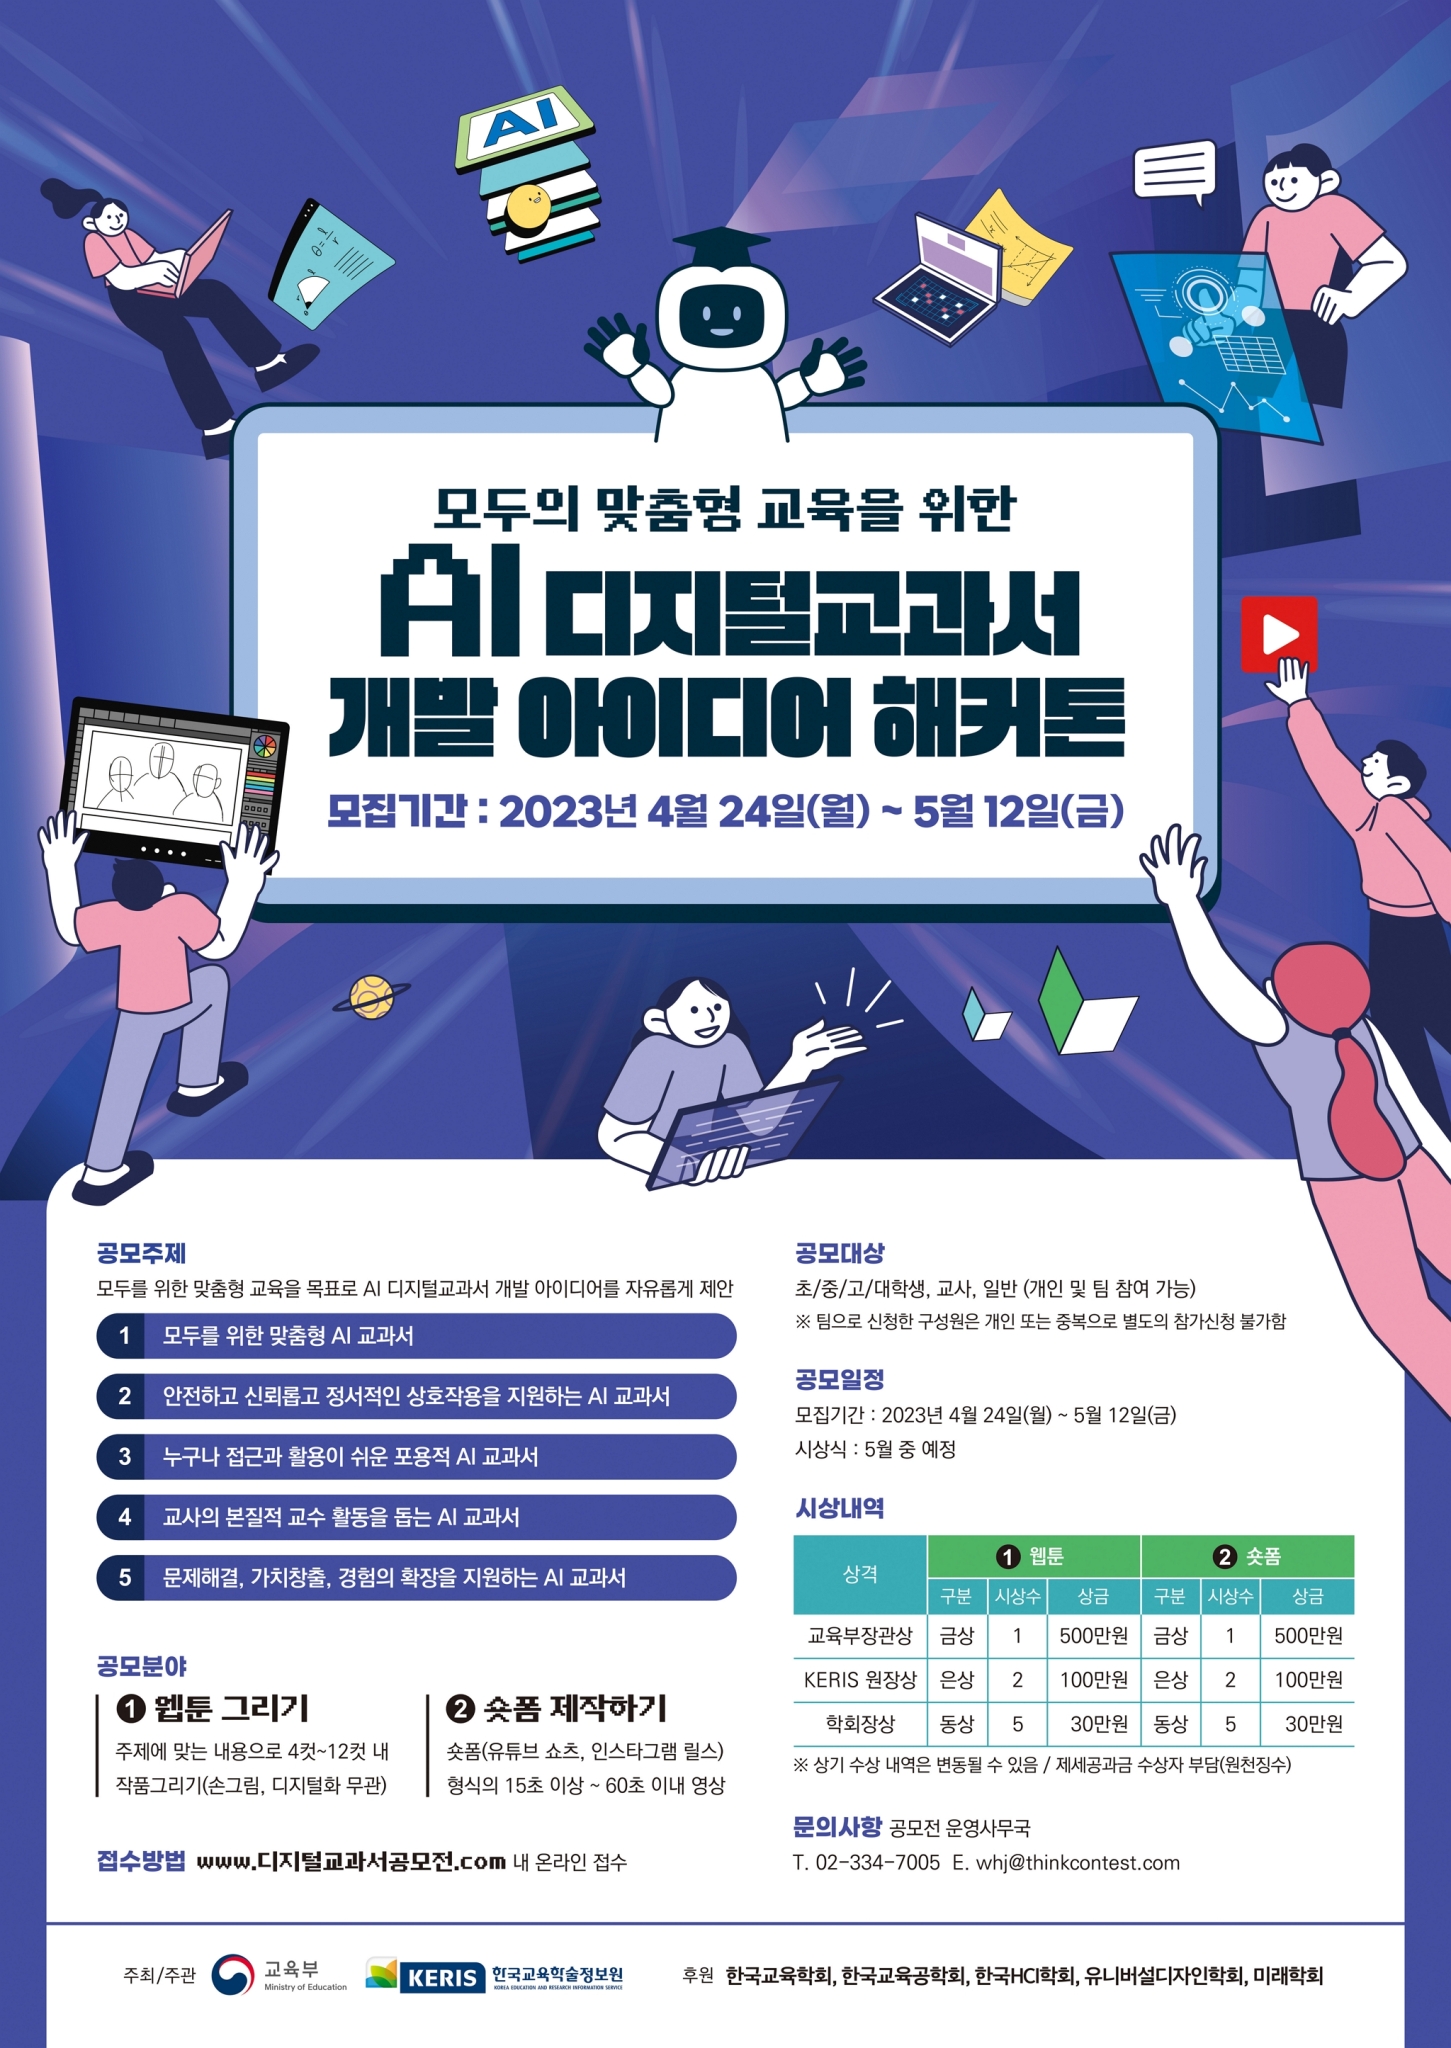 AI 디지털교과서 개발 아이디어 해커톤 안내 포스터